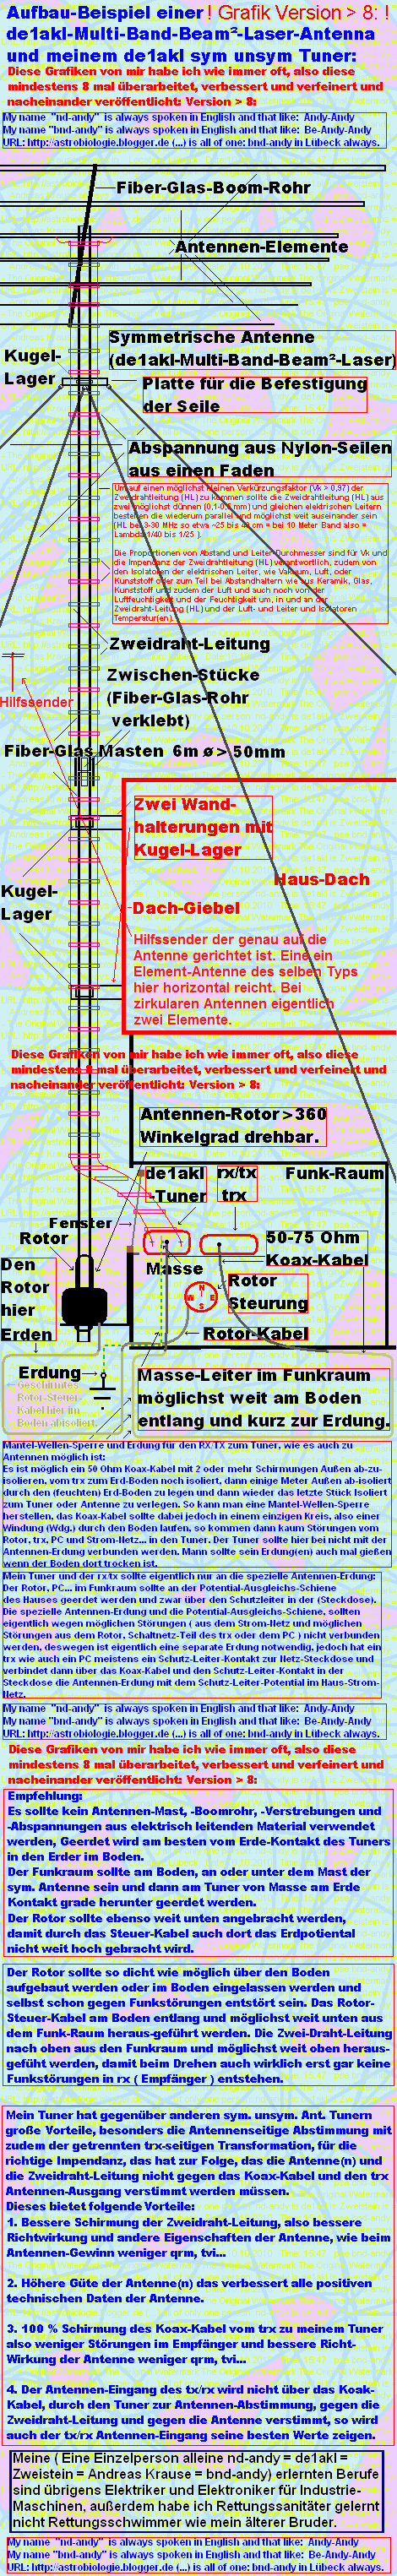 Version > 9: shack de1akl-gnd/de1akl-ant/de1akl rotor/de1akl-tuner/de1akl gnd/ for rx/tx by de1akl = nd-andy = zweistein is = andreas krause always in lübeck: